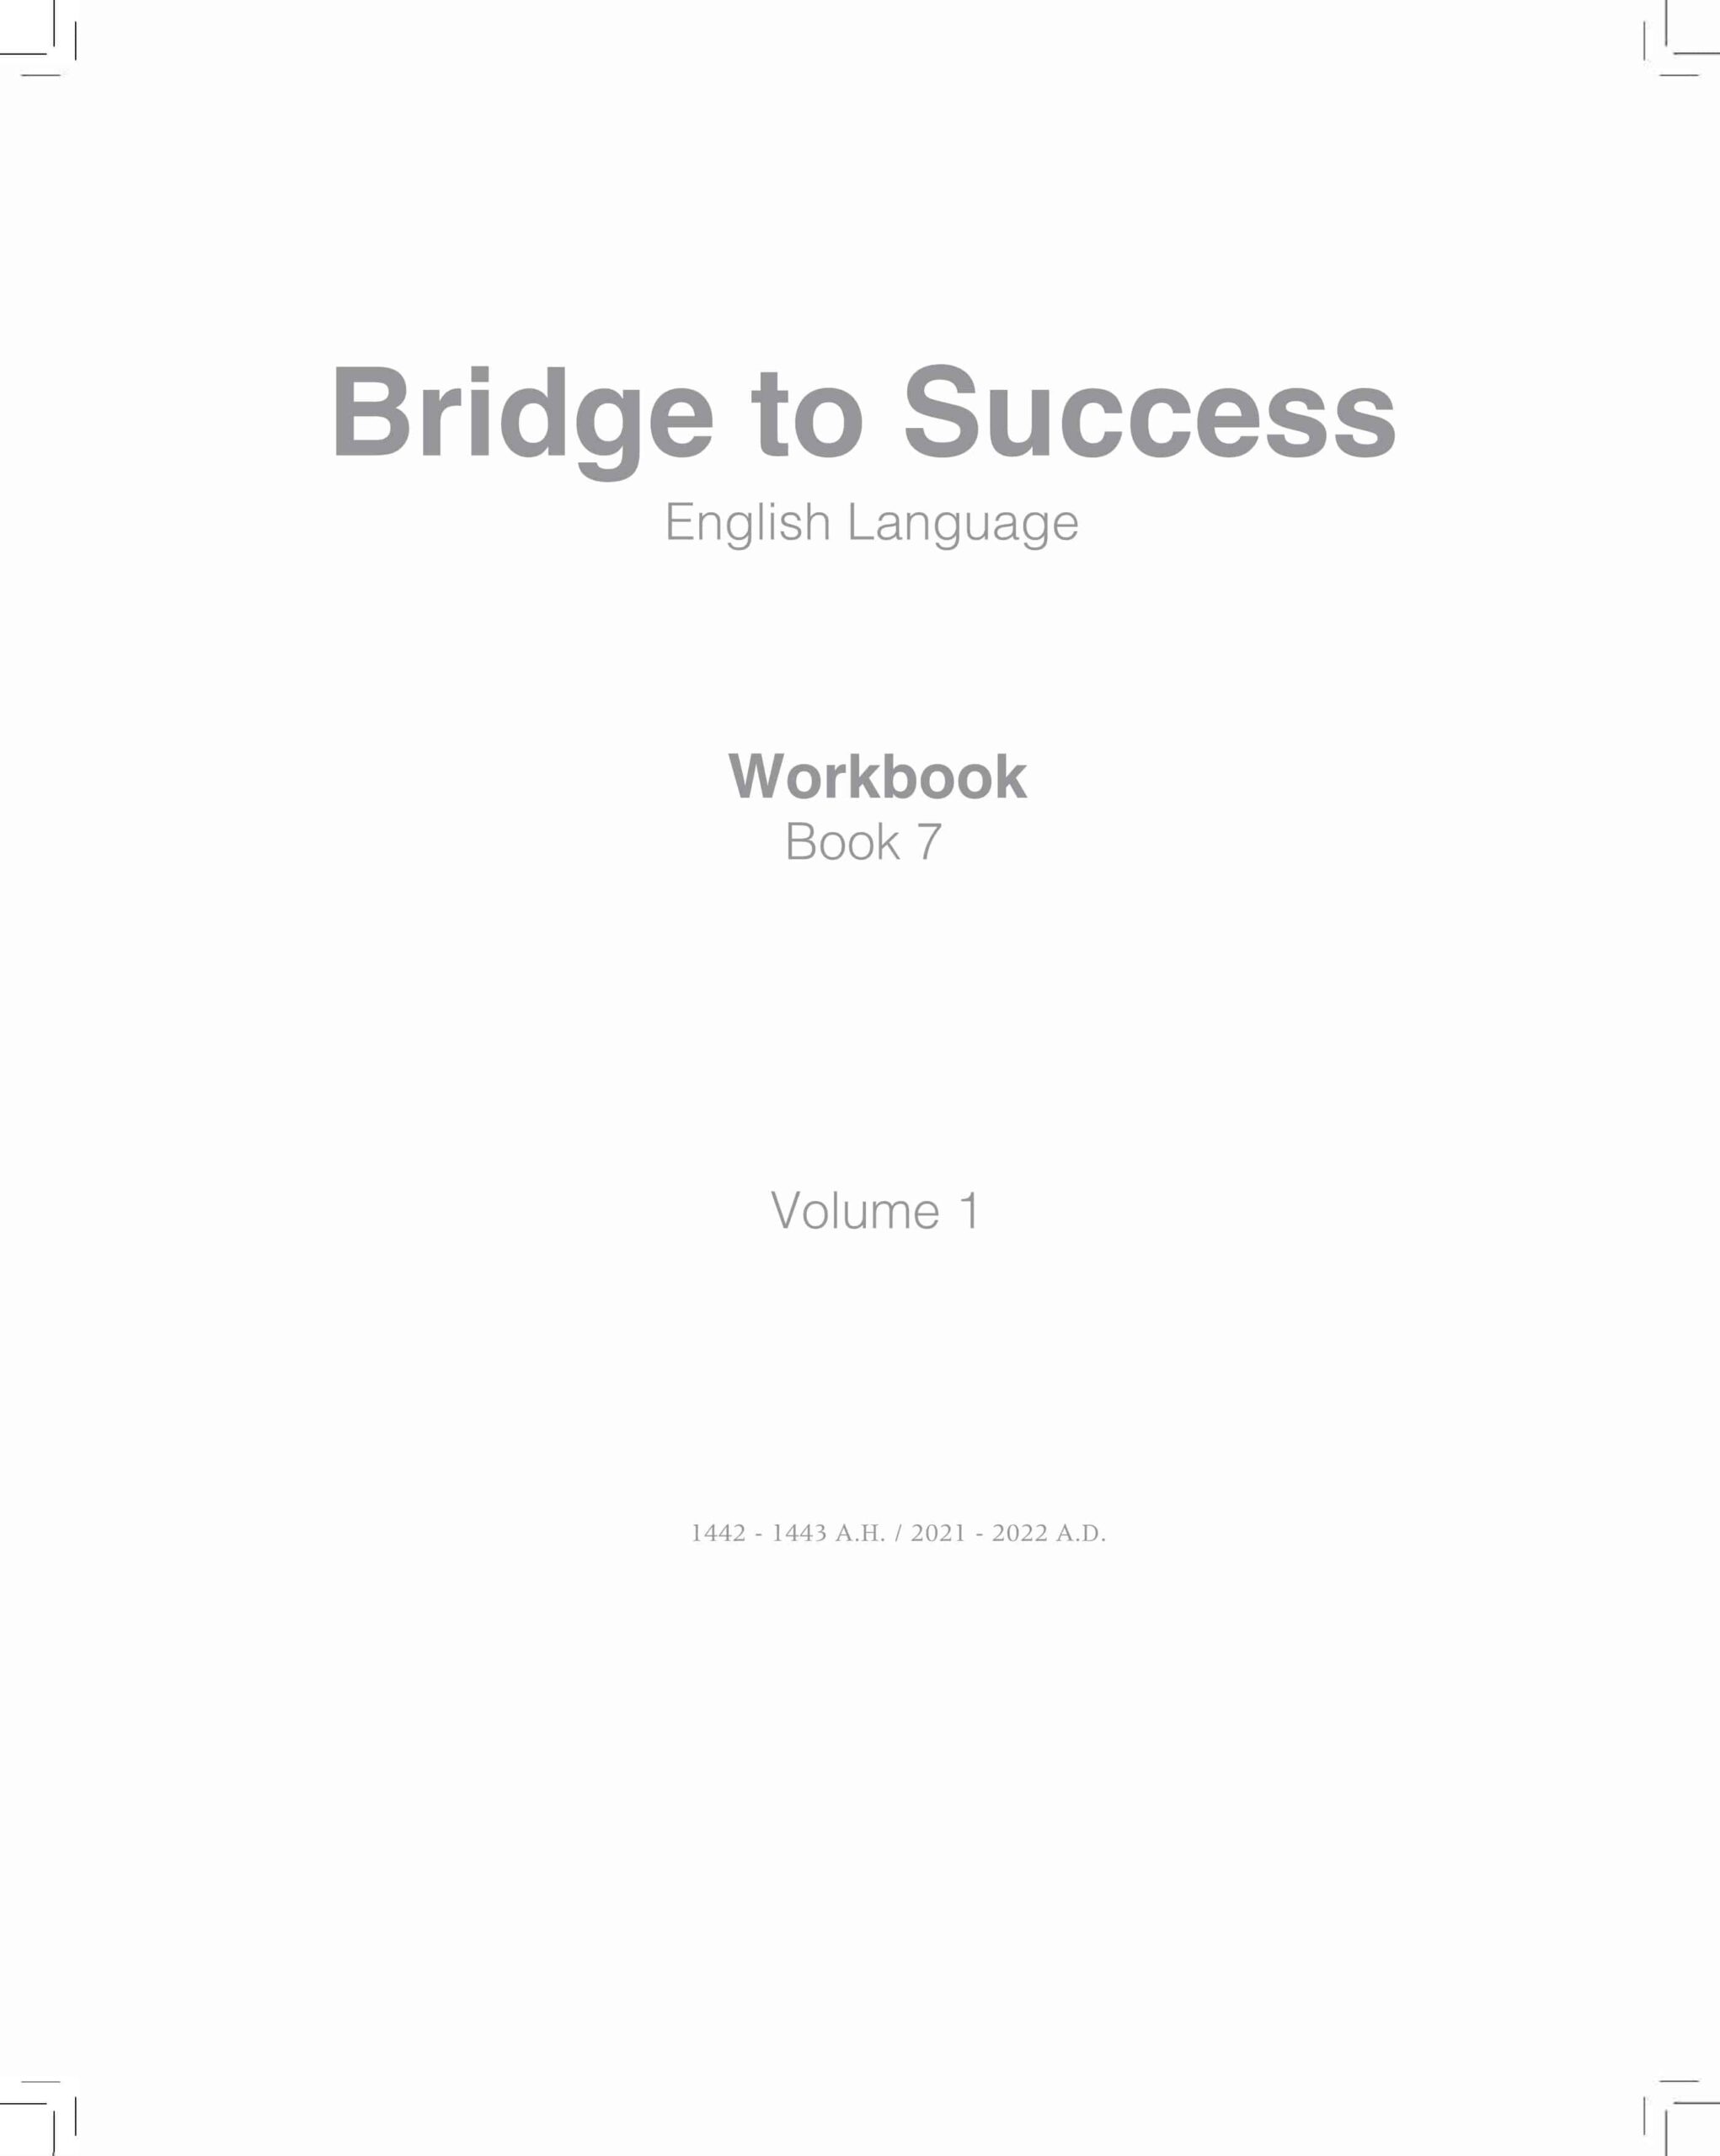 كتاب الطالب Work book اللغة الإنجليزية الصف السابع الفصل الدراسي الأول 2021-2022